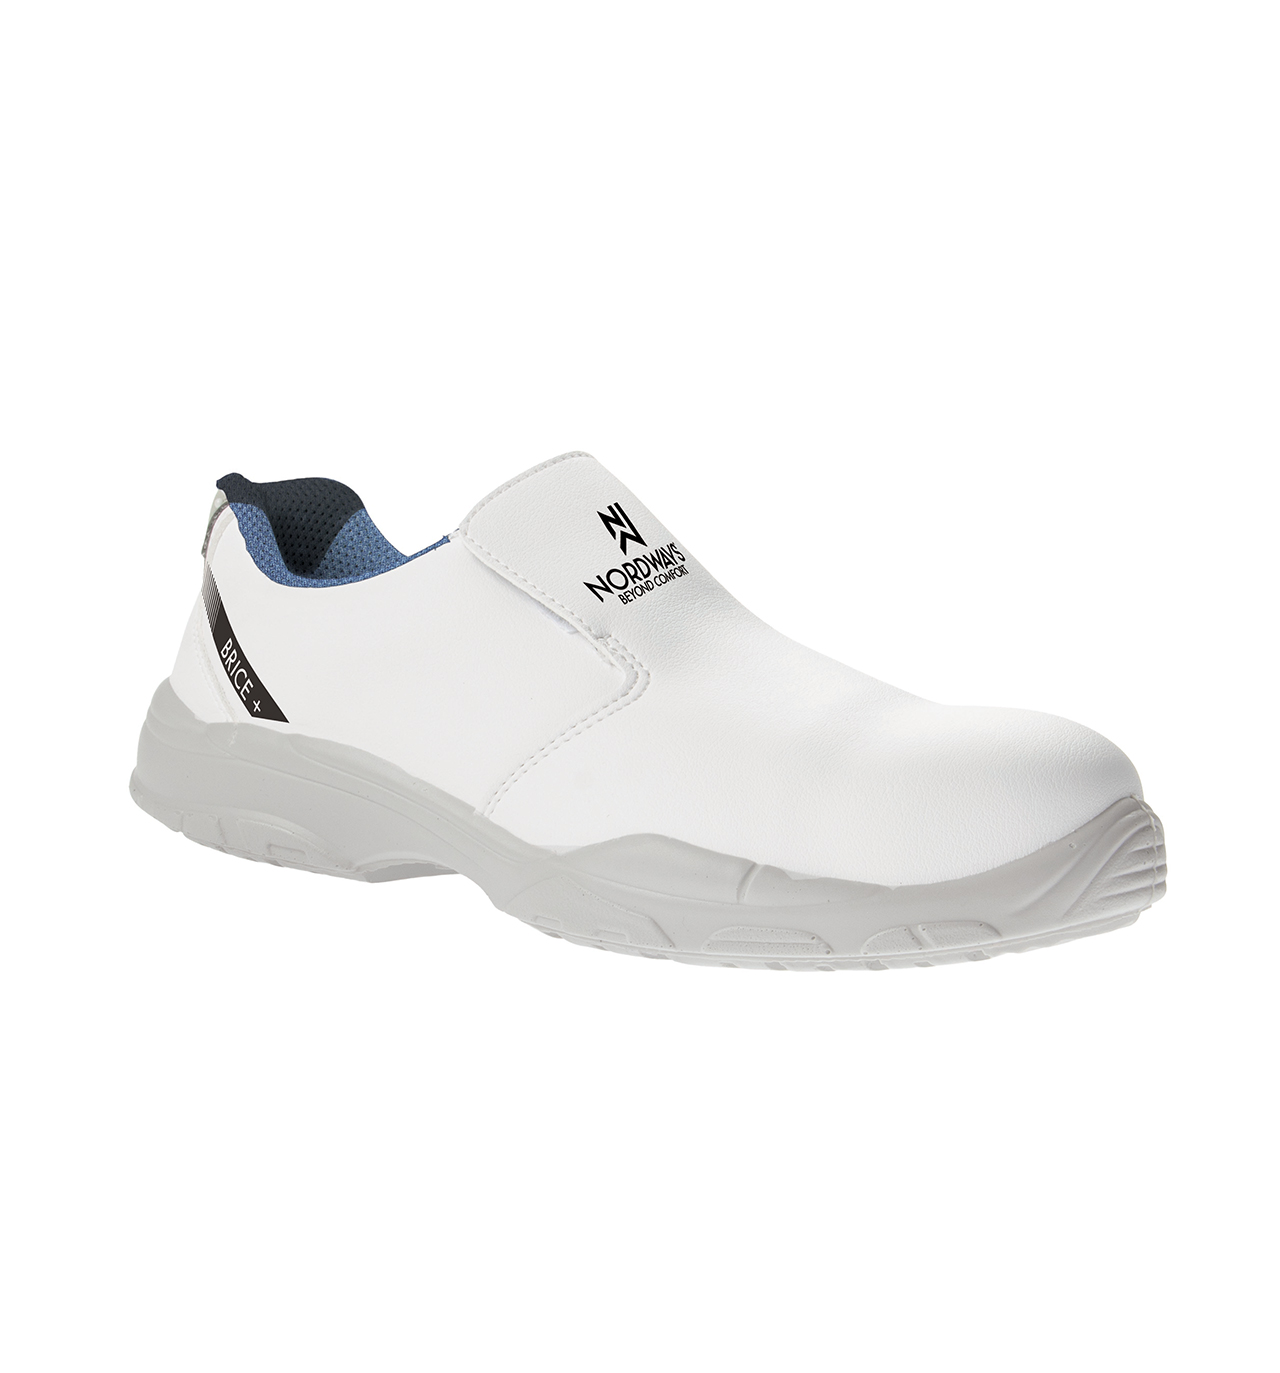 Chaussures de sécurité blanches légères S2